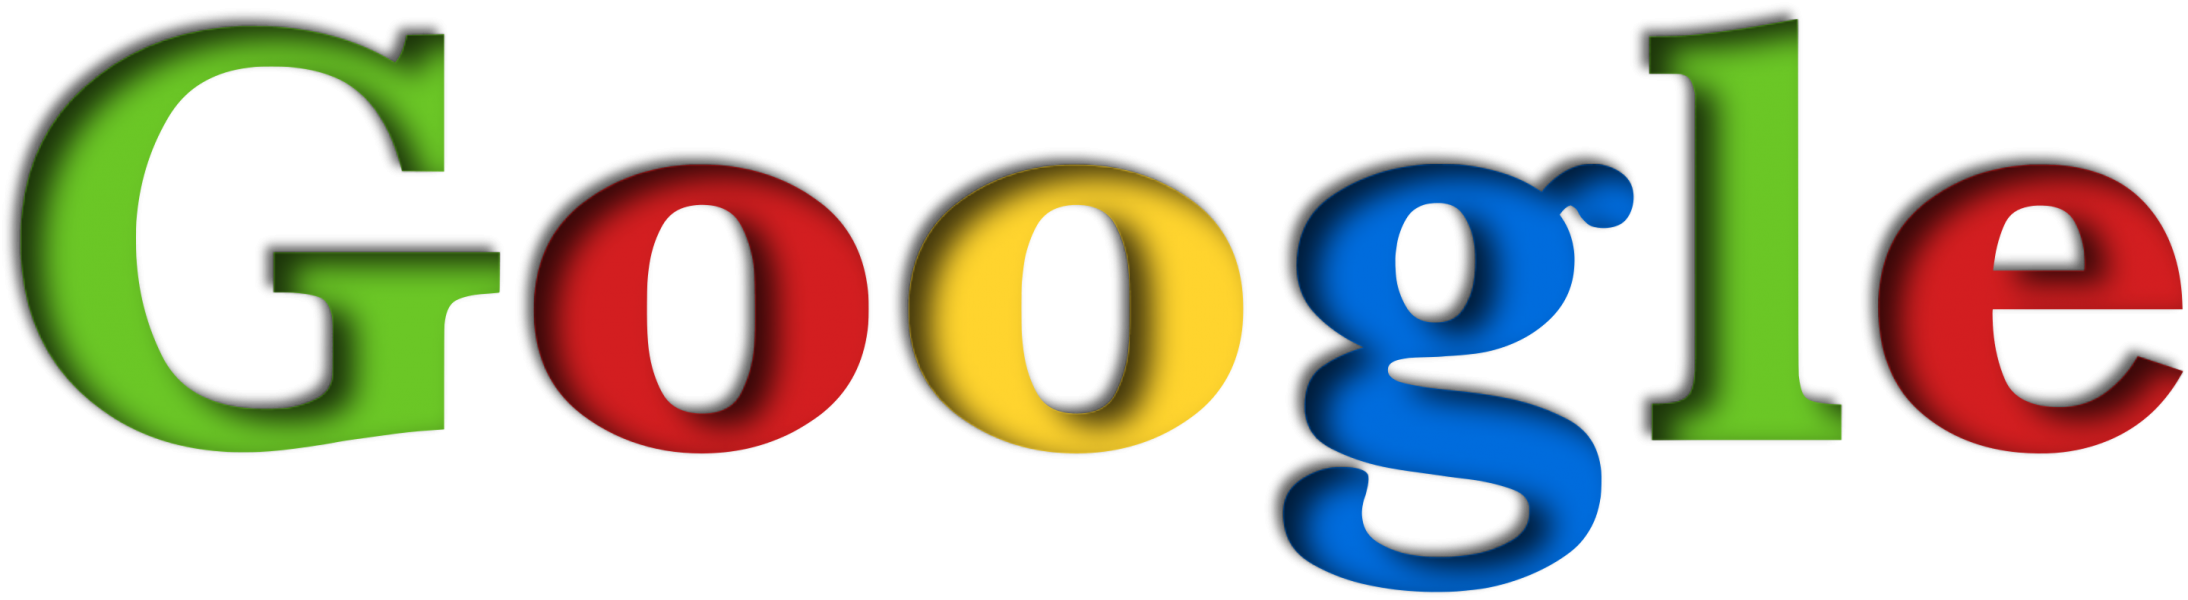 Google_Logo_(1998).png